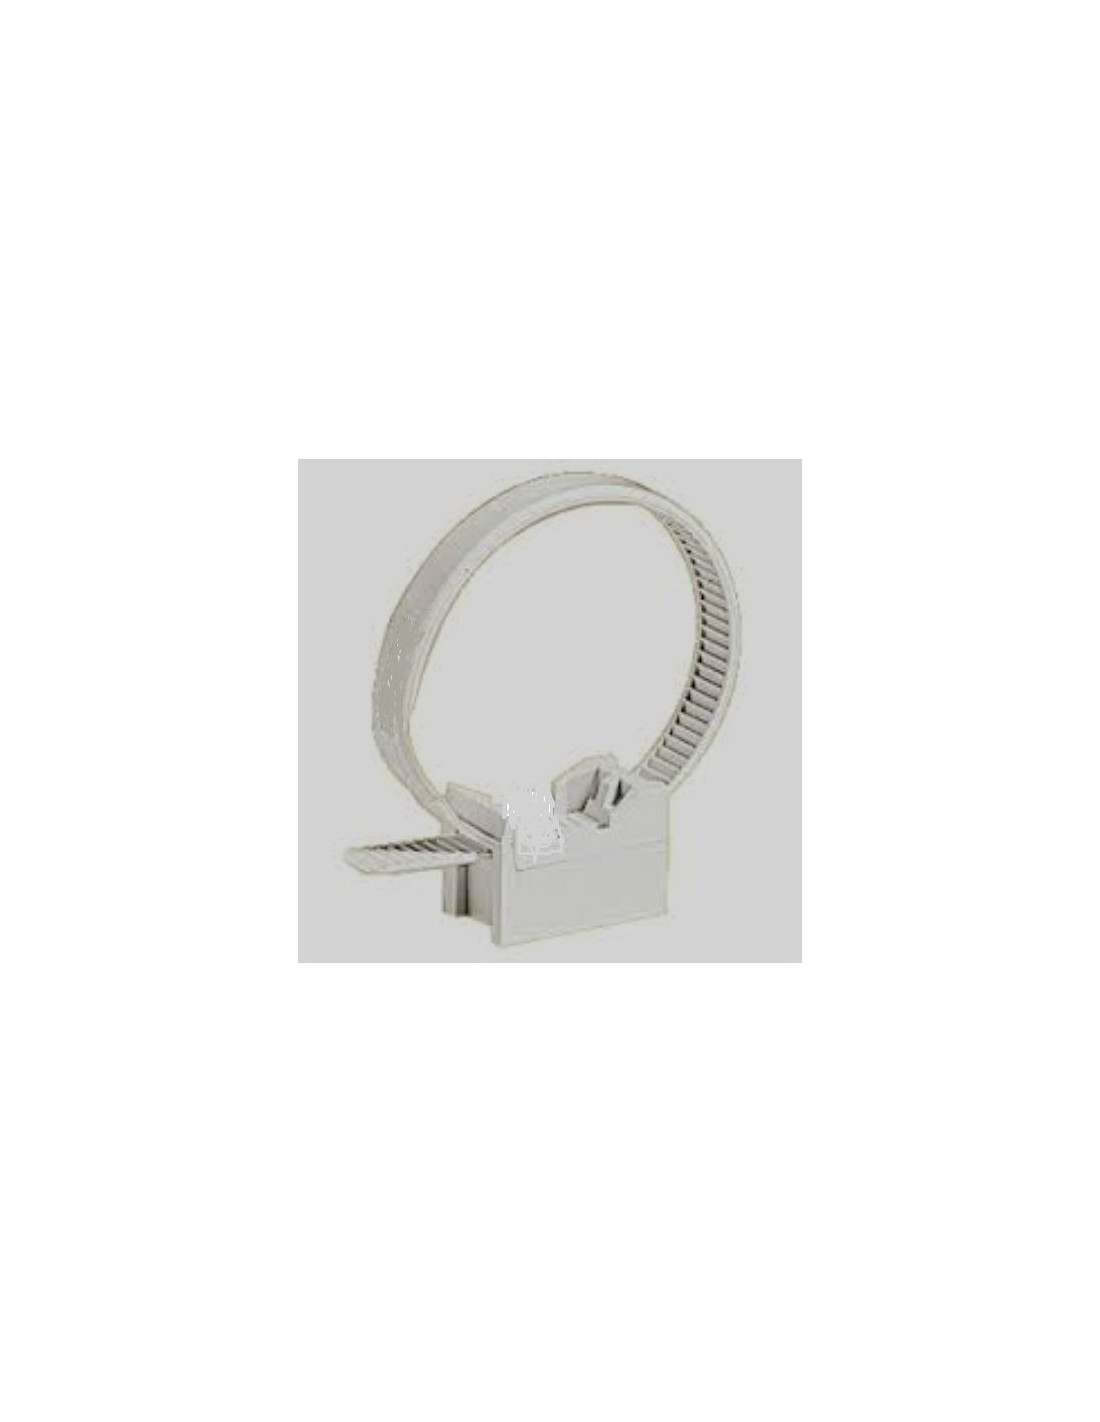 Collier embase Ramtub fixation câbles Ø16-32mm 100 colliers et